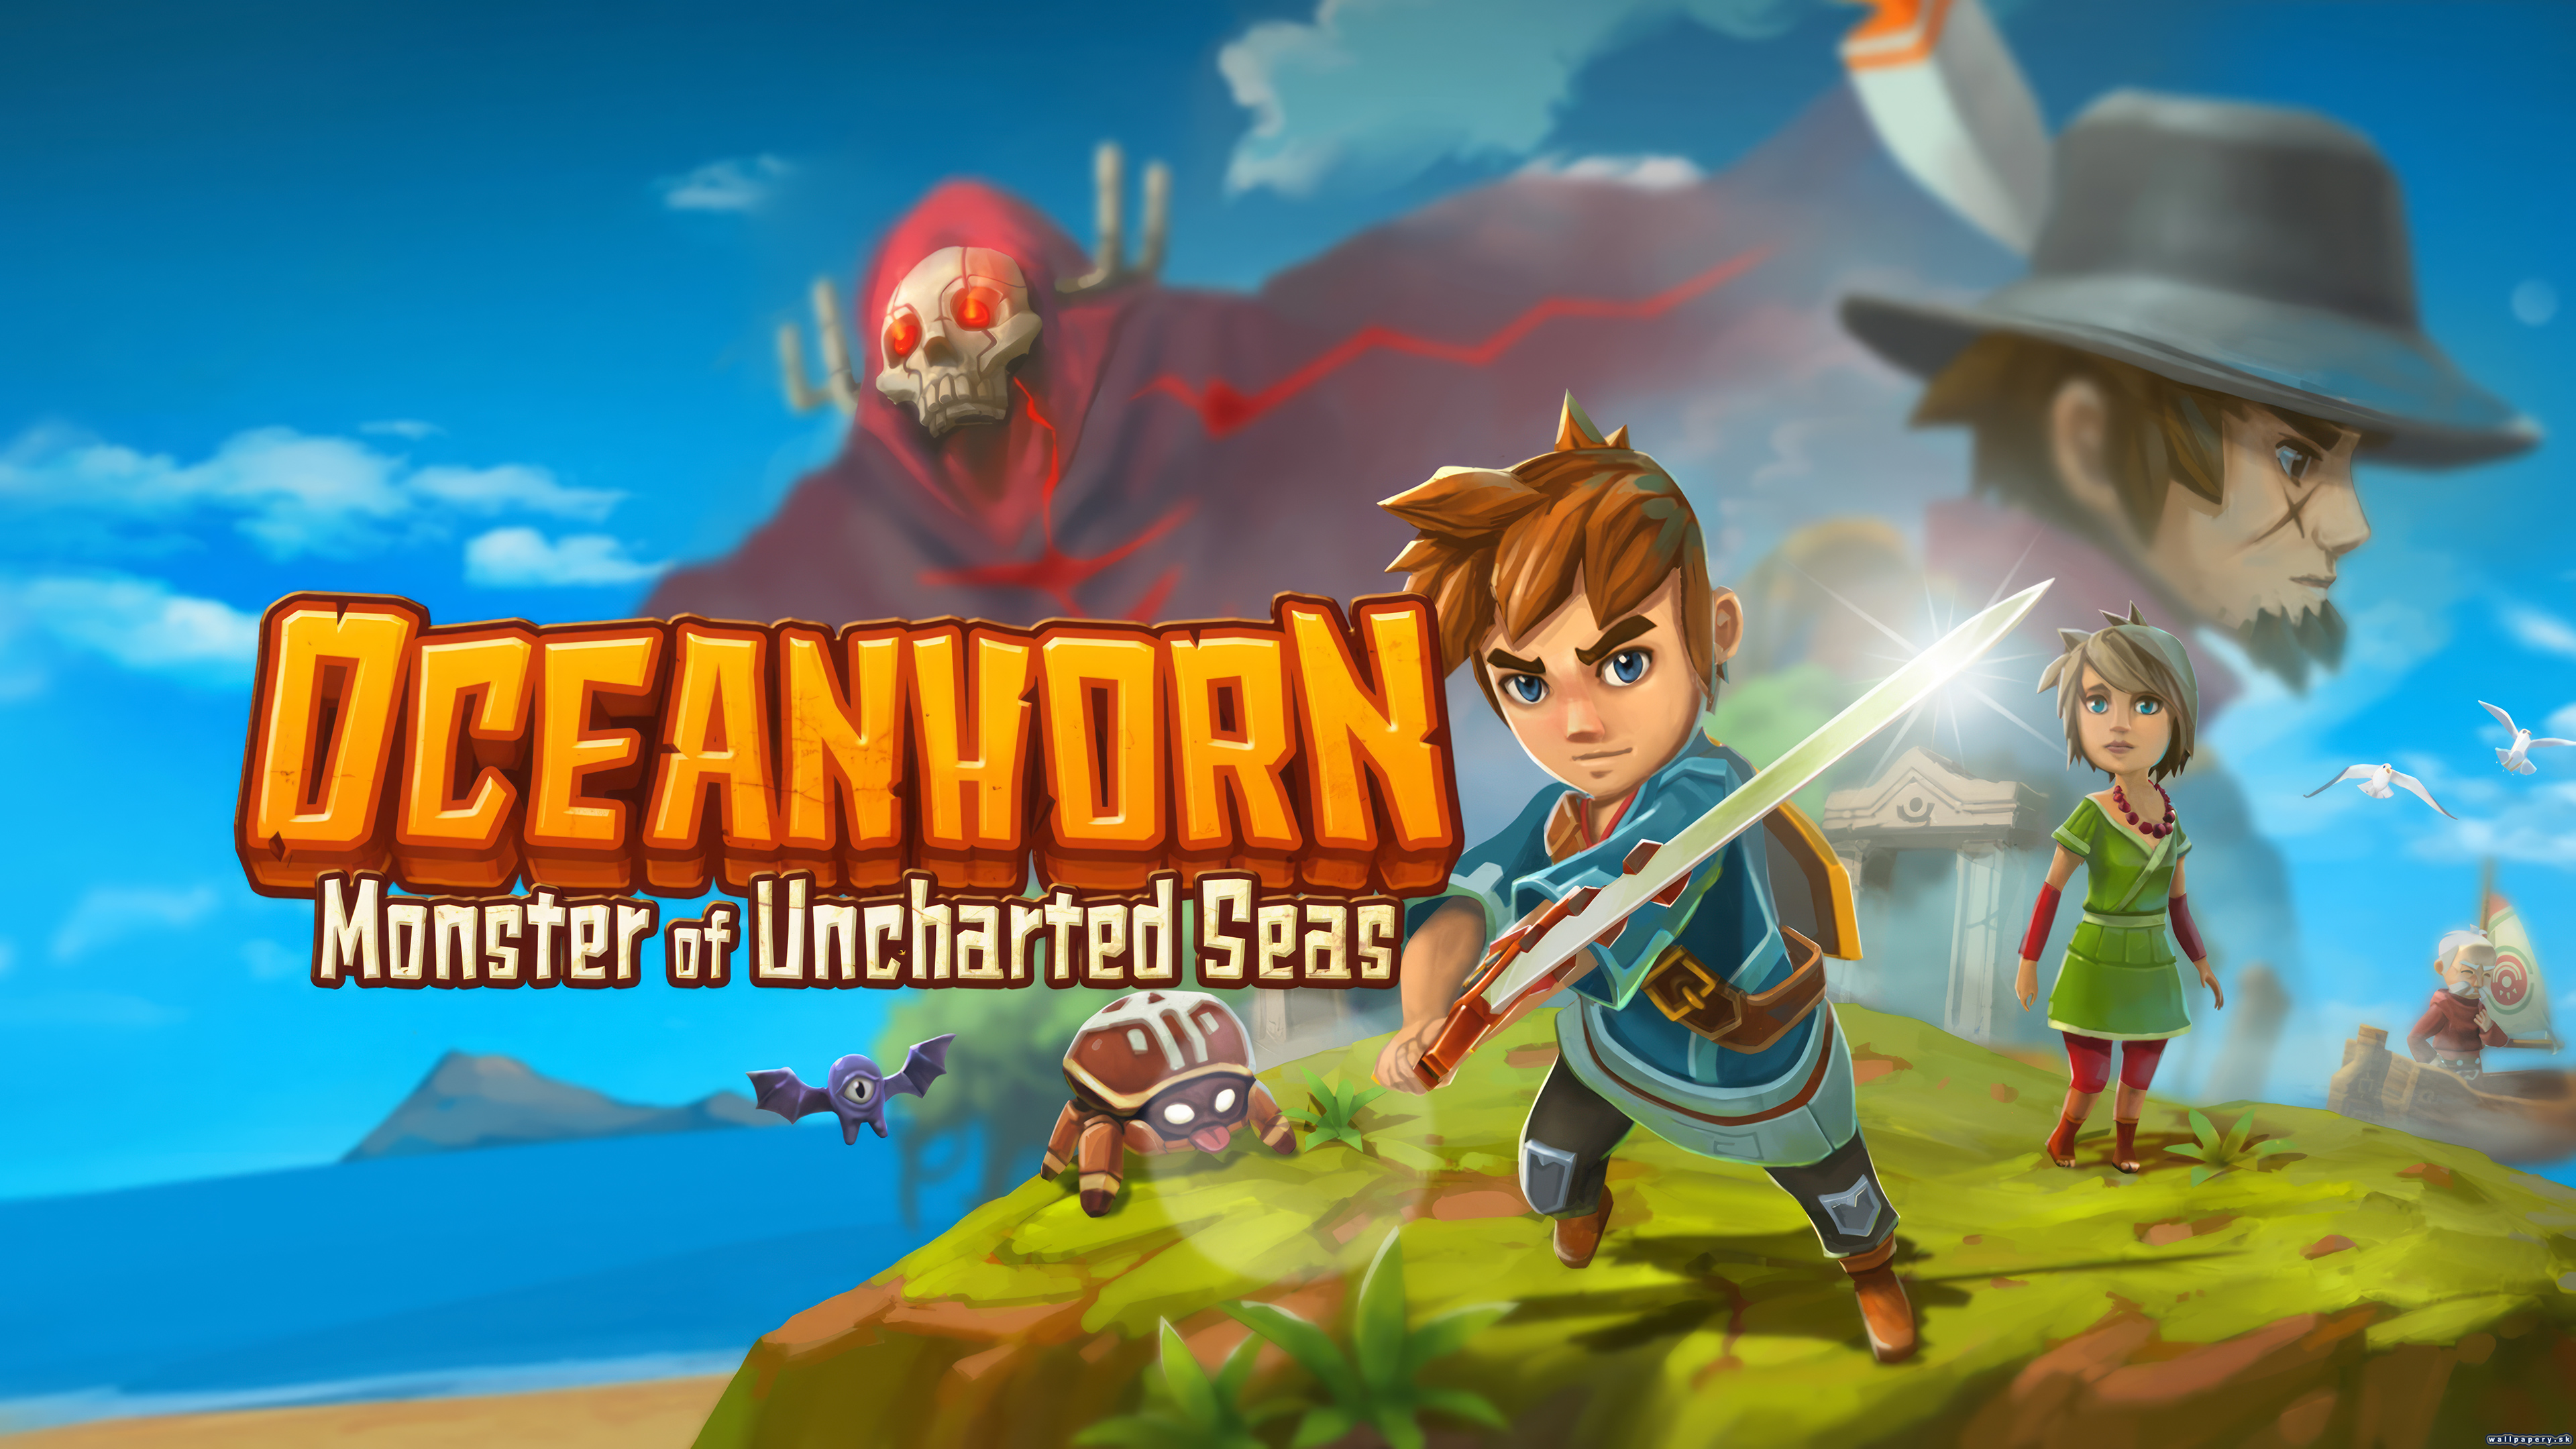 Oceanhorn: Monster of Uncharted Seas - wallpaper 1